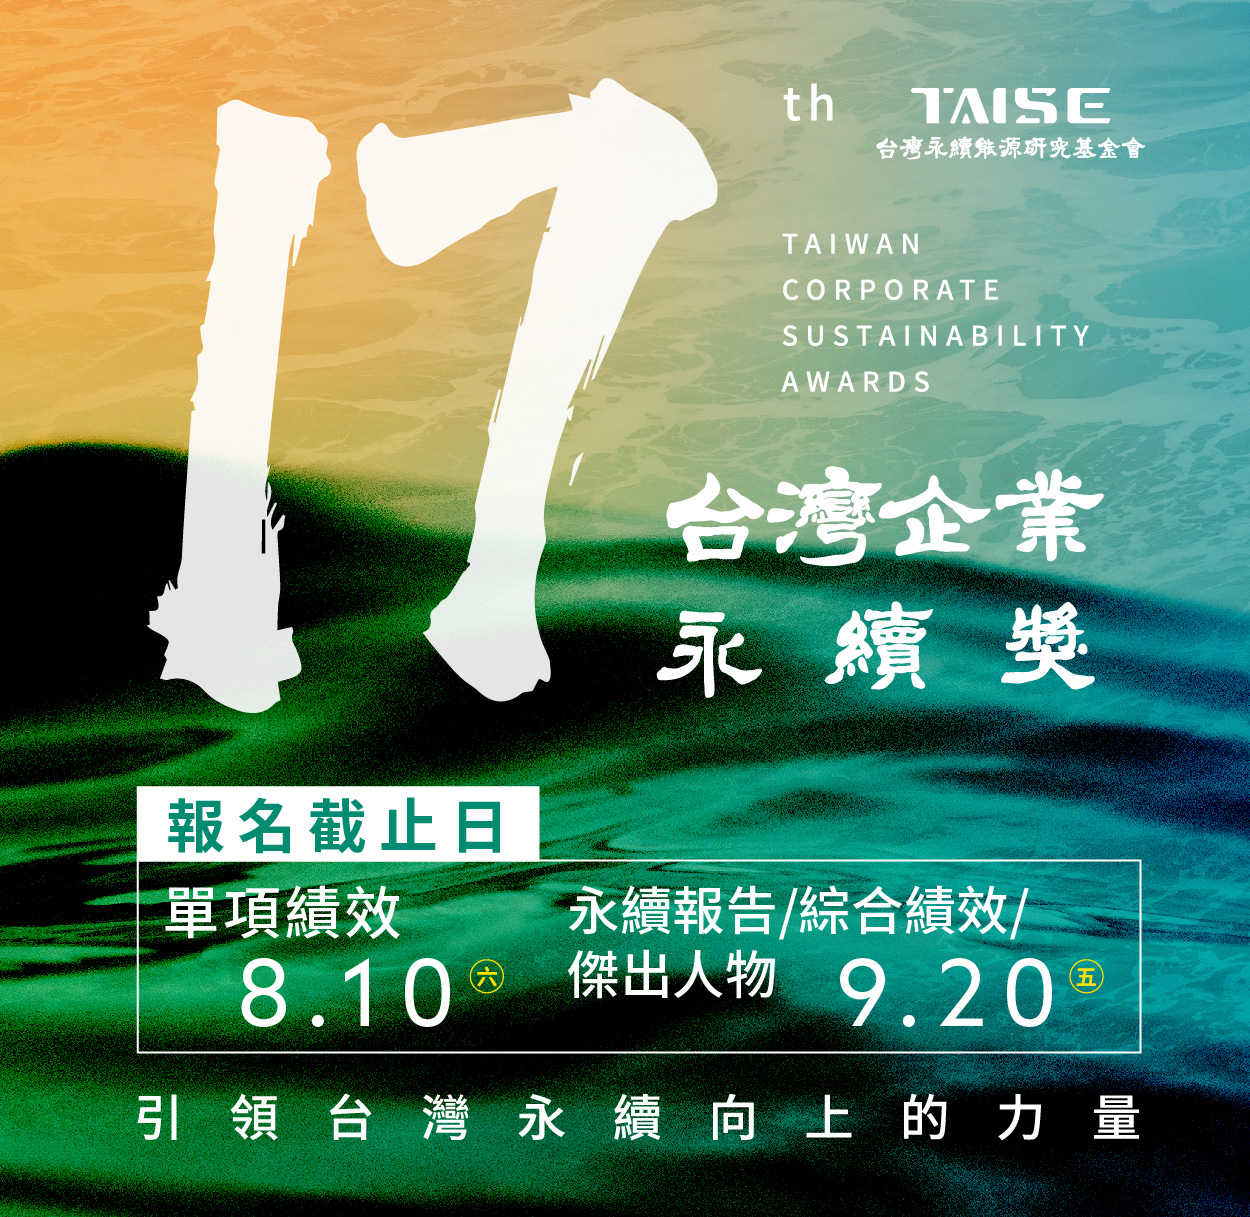 2024年 第17屆 TCSA台灣企業永續獎 開放報名  